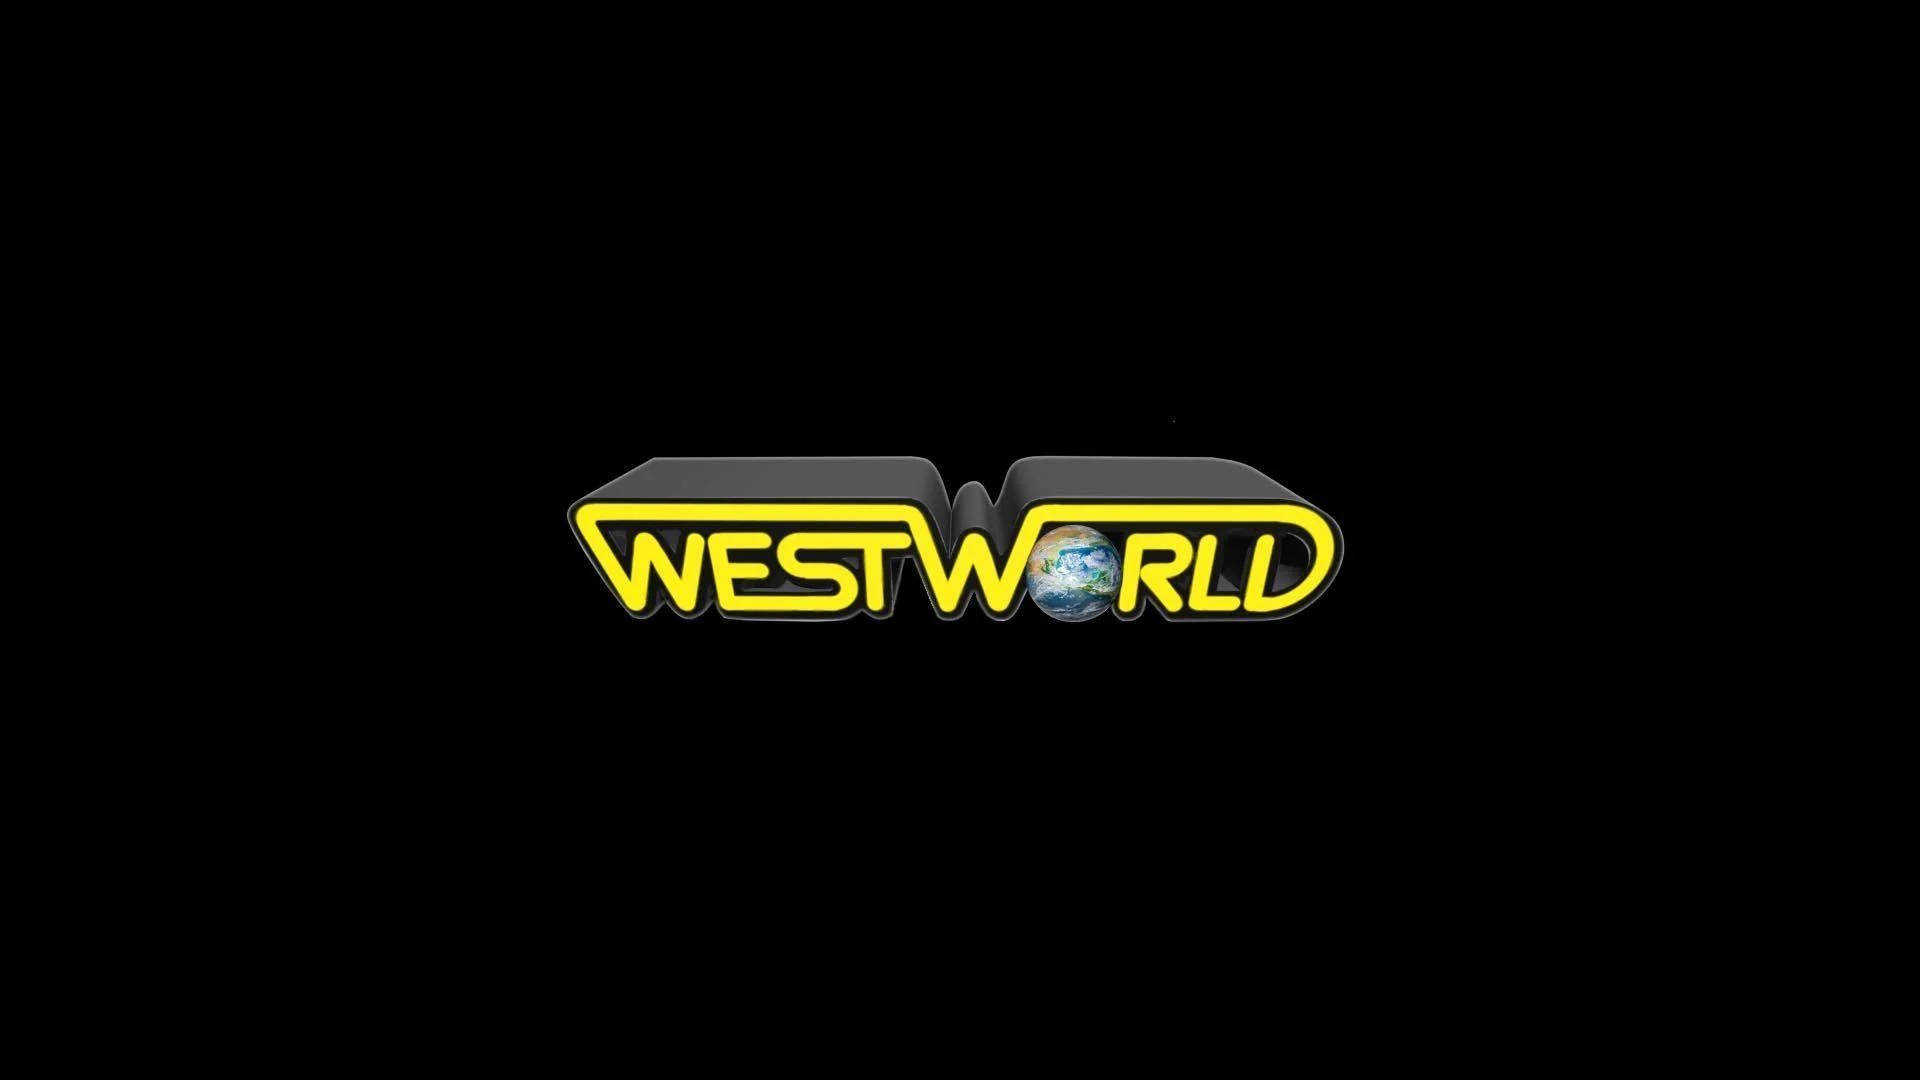 Westworldfigur In Schwarz Wallpaper